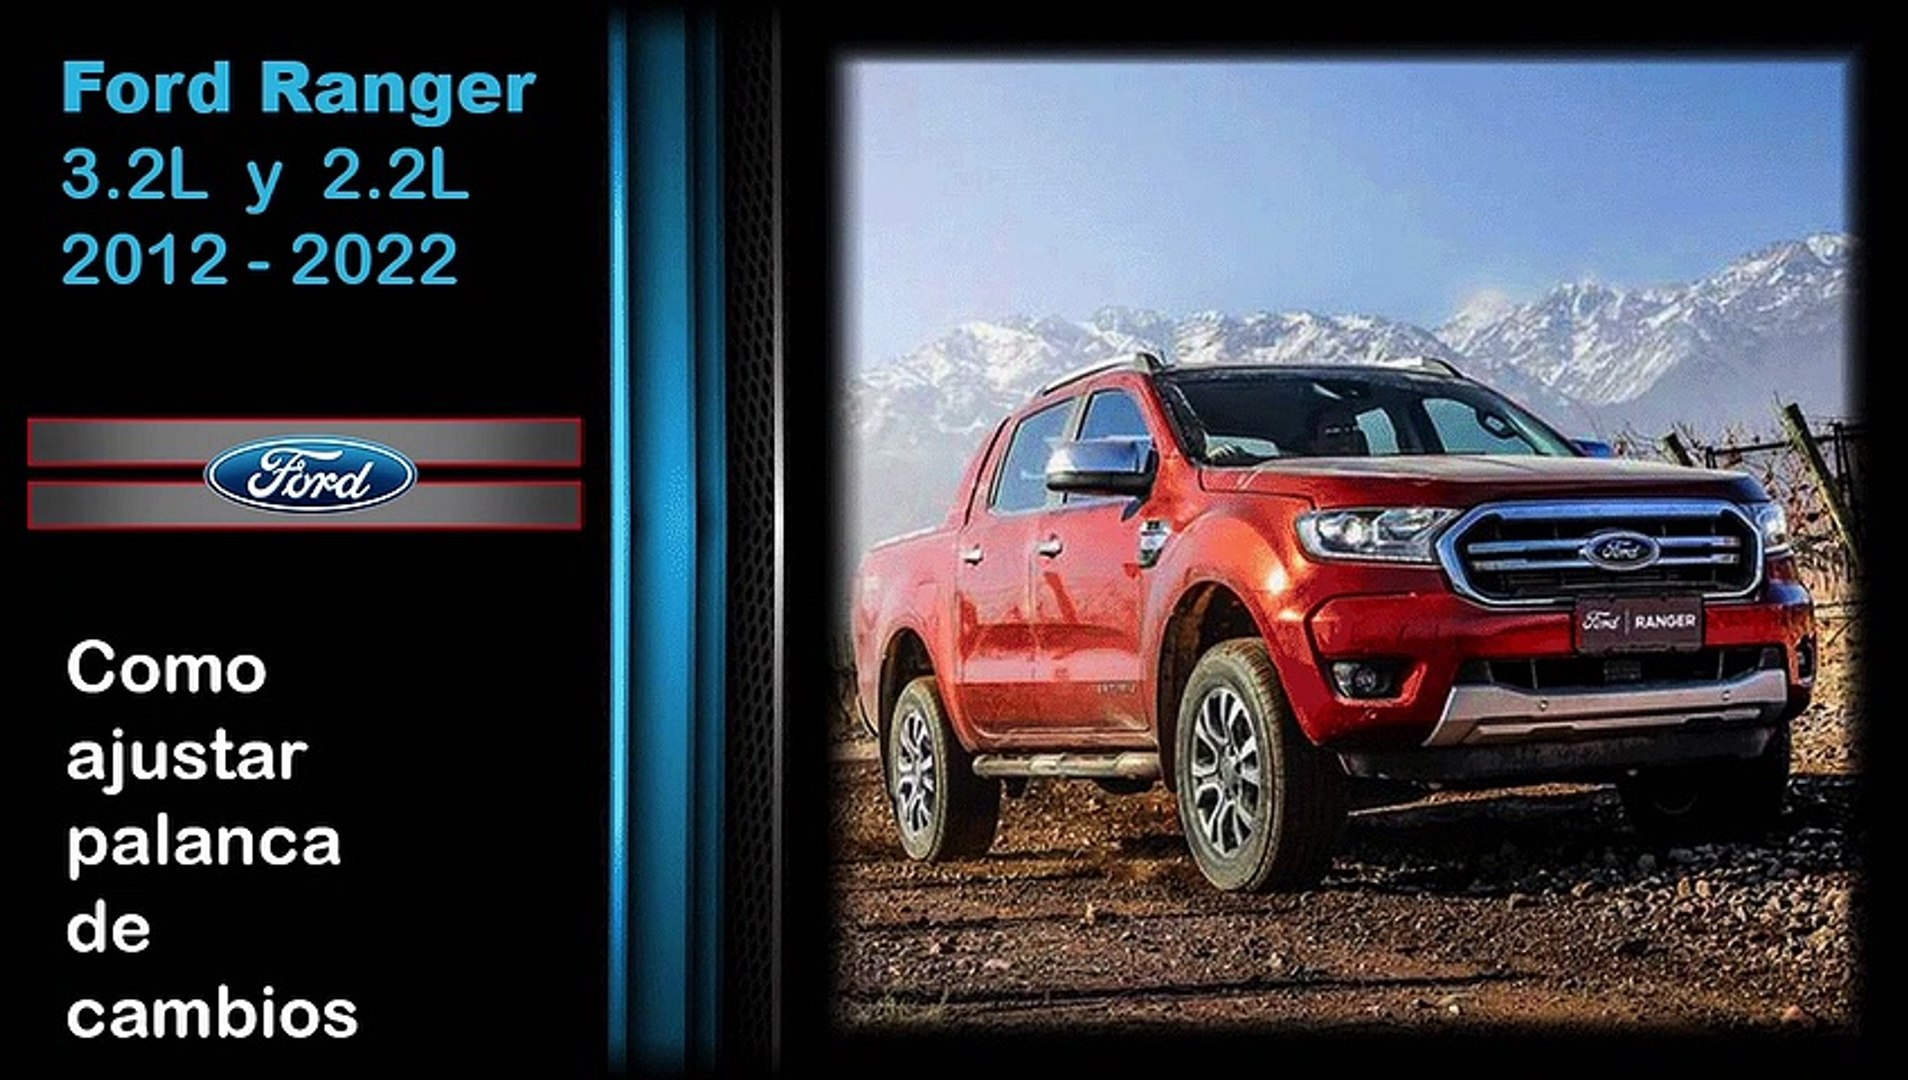 Ford Ranger 3.2 y 2.2, ajustar palanca de cambios - Vídeo Dailymotion